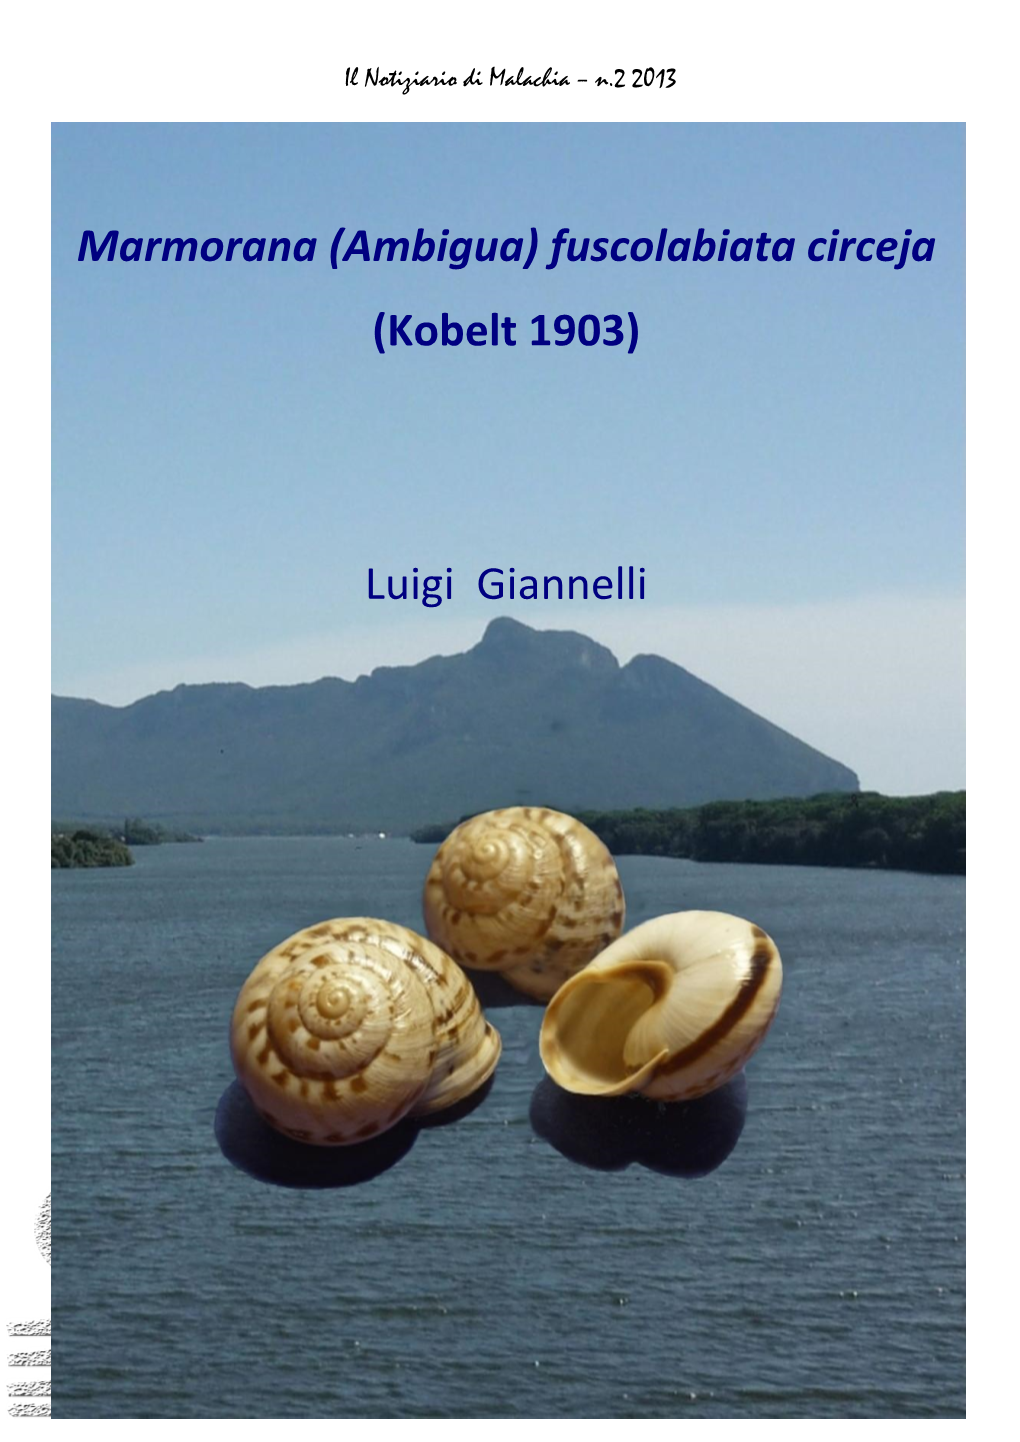 Marmorana (Ambigua) Fuscolabiata Circeja (Kobelt 1903) Luigi Giannelli